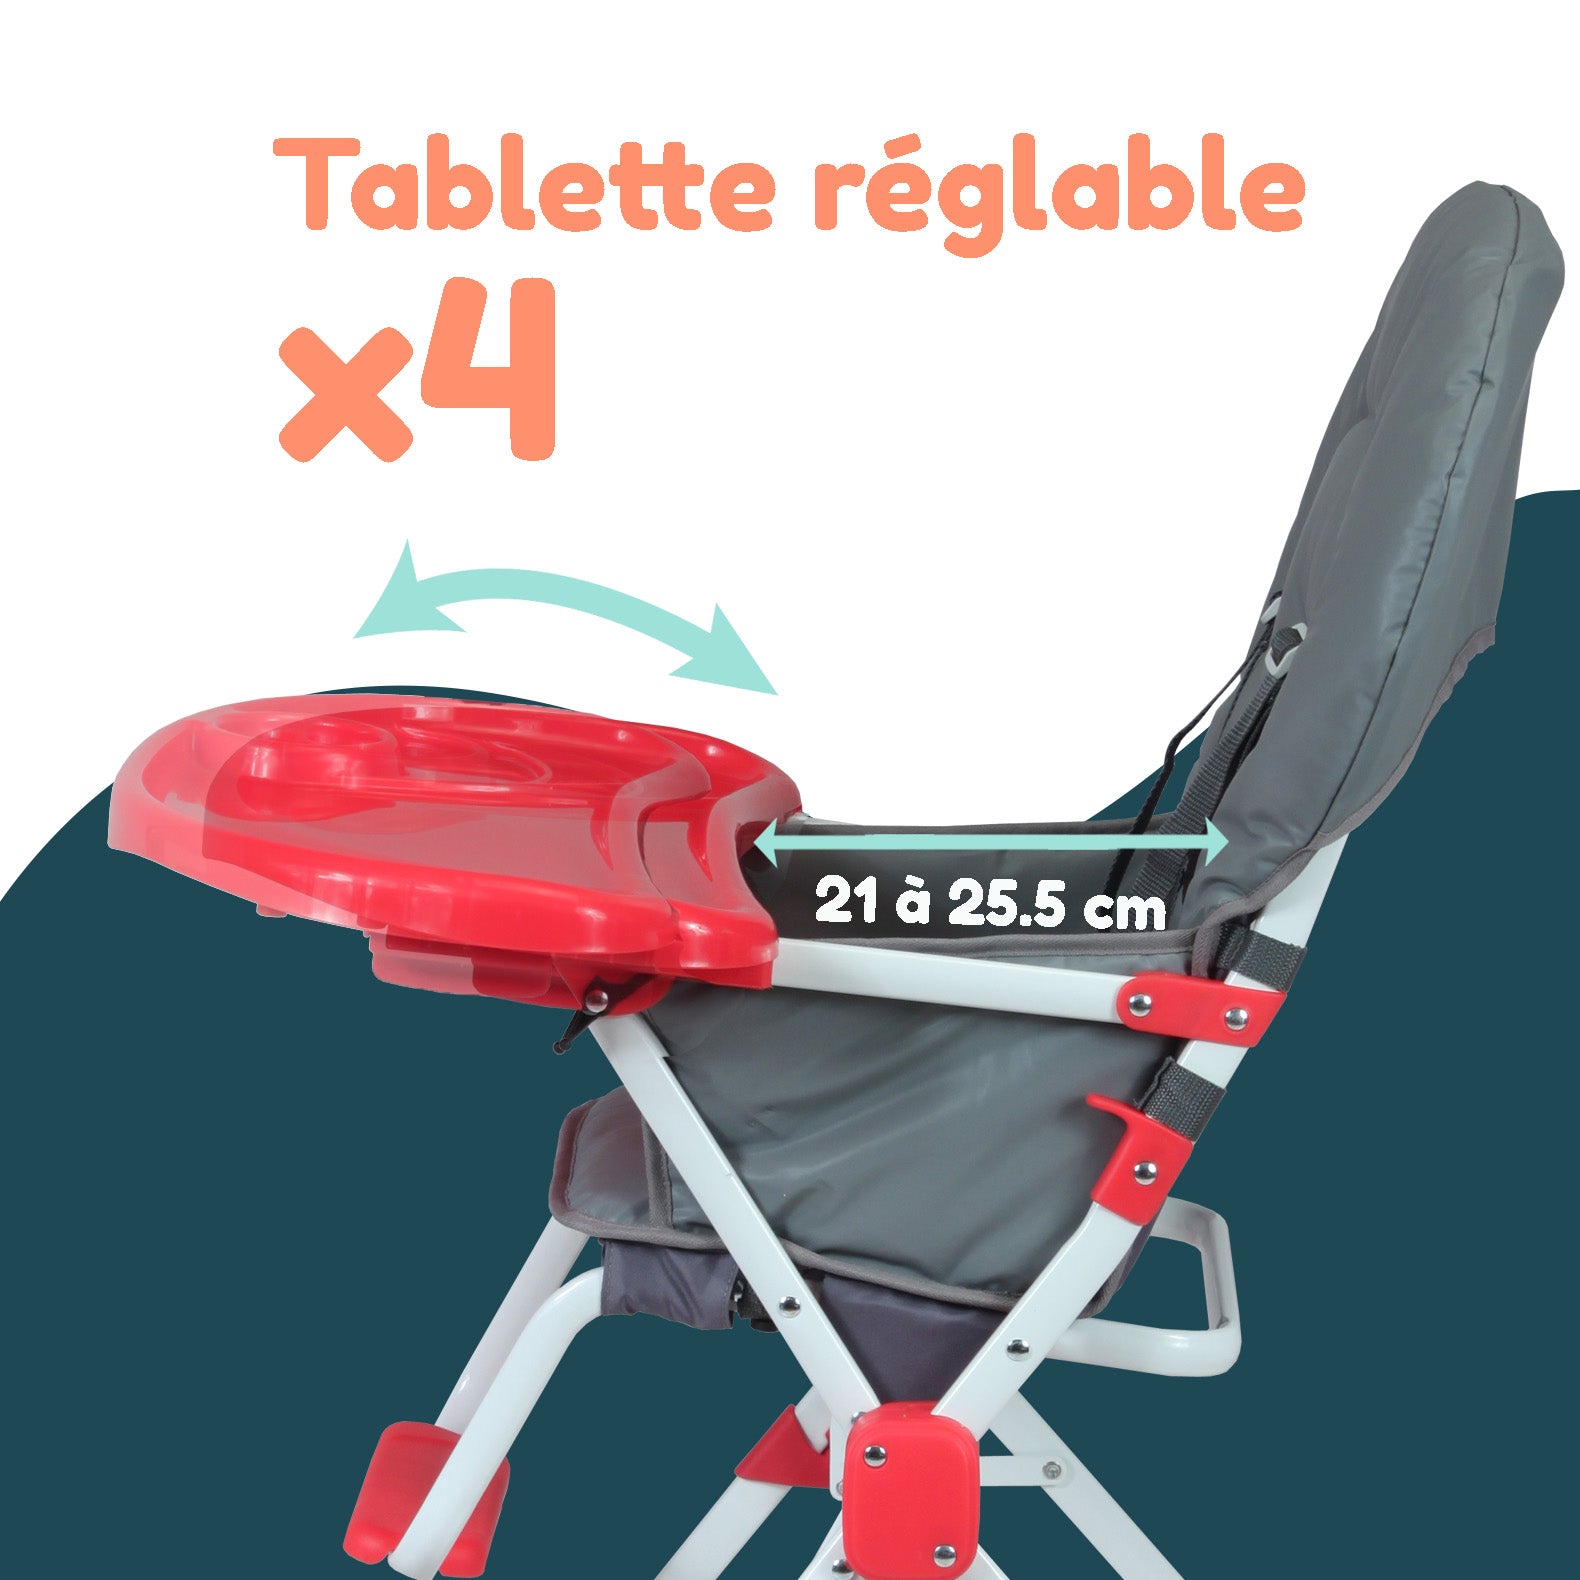 Bambisol Chaise Haute Bébé Pliable Fixe | Ultra Compacte et Légère,  Tablette Amovible Réglable | Grise